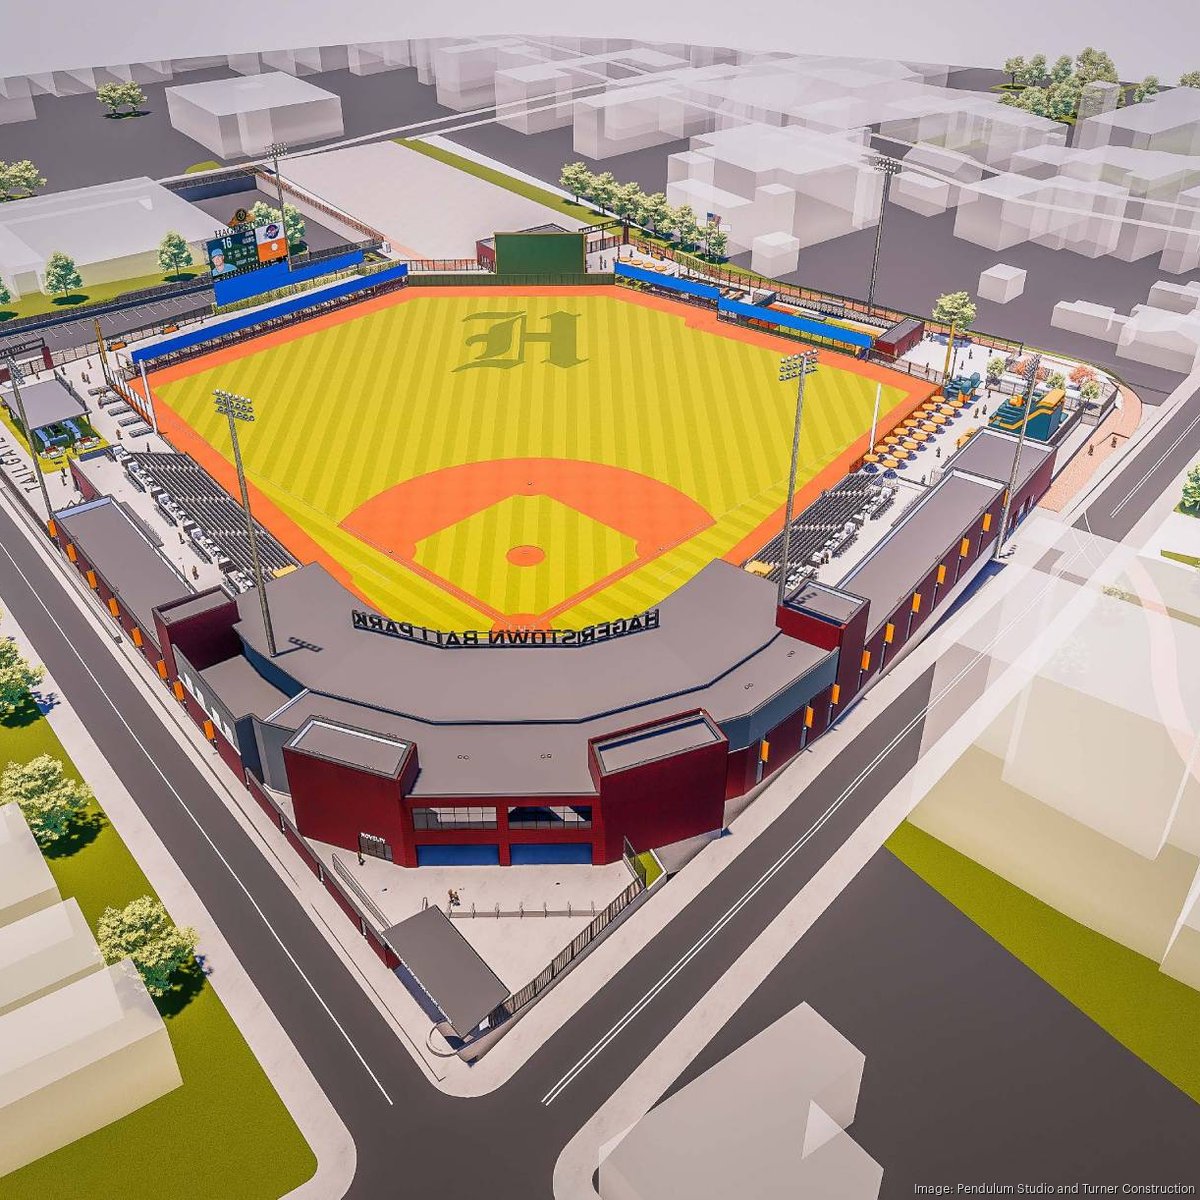 Wichita's new minor league baseball stadium named